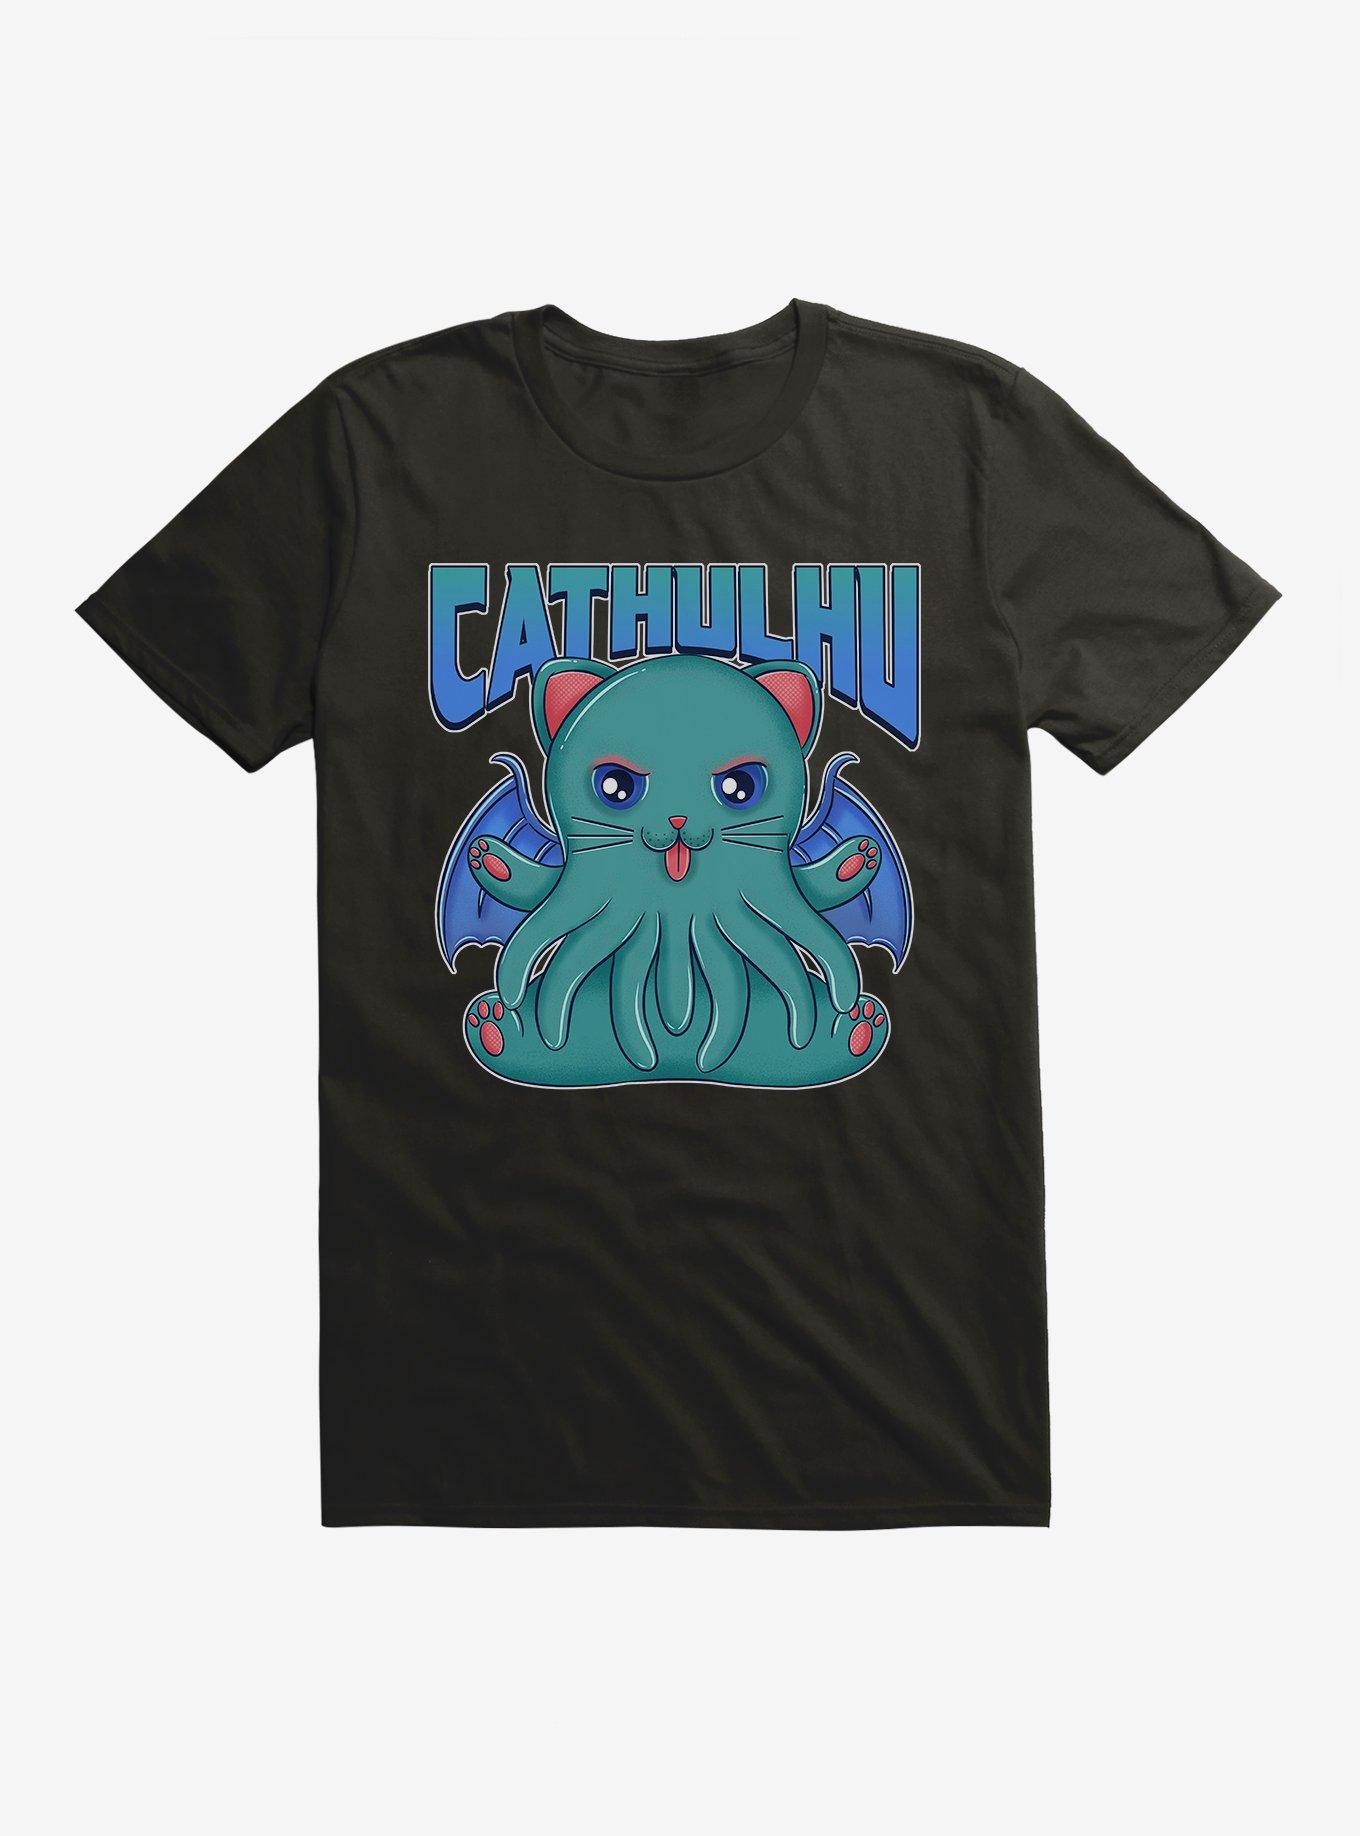 Cathulu T-Shirt